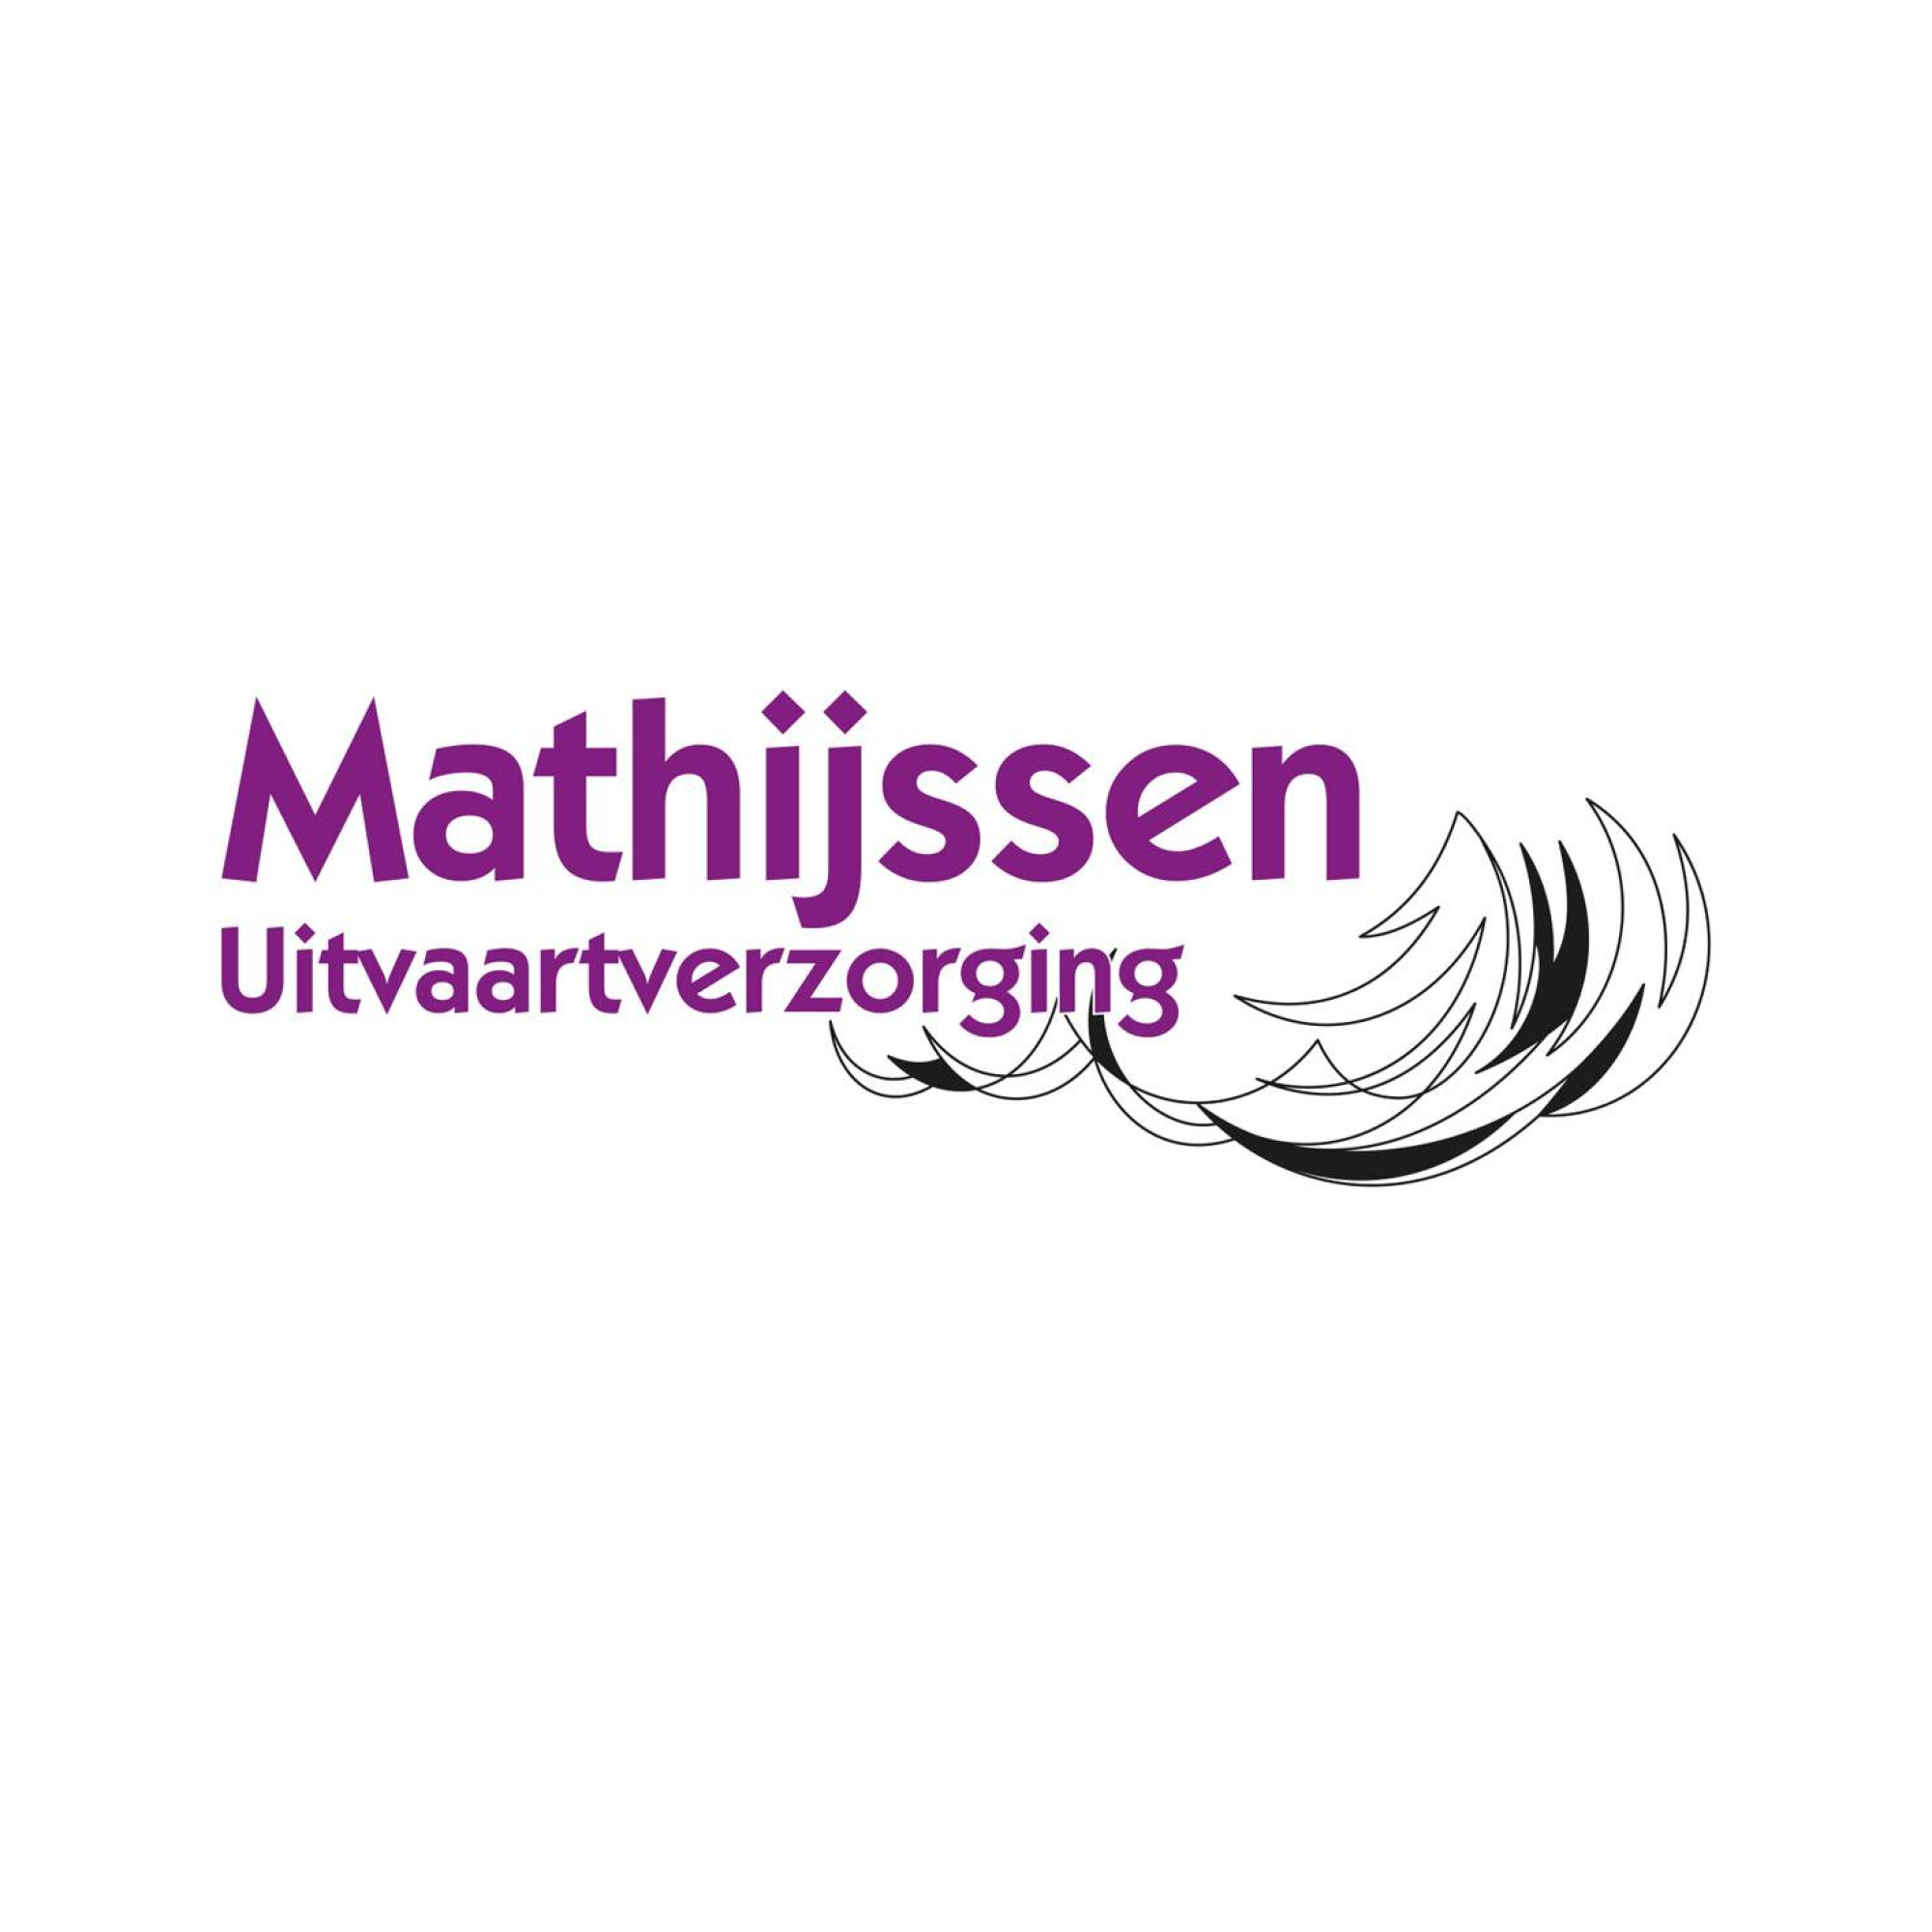 Mathijssen-Uitvaartverzorging-logo.jpg